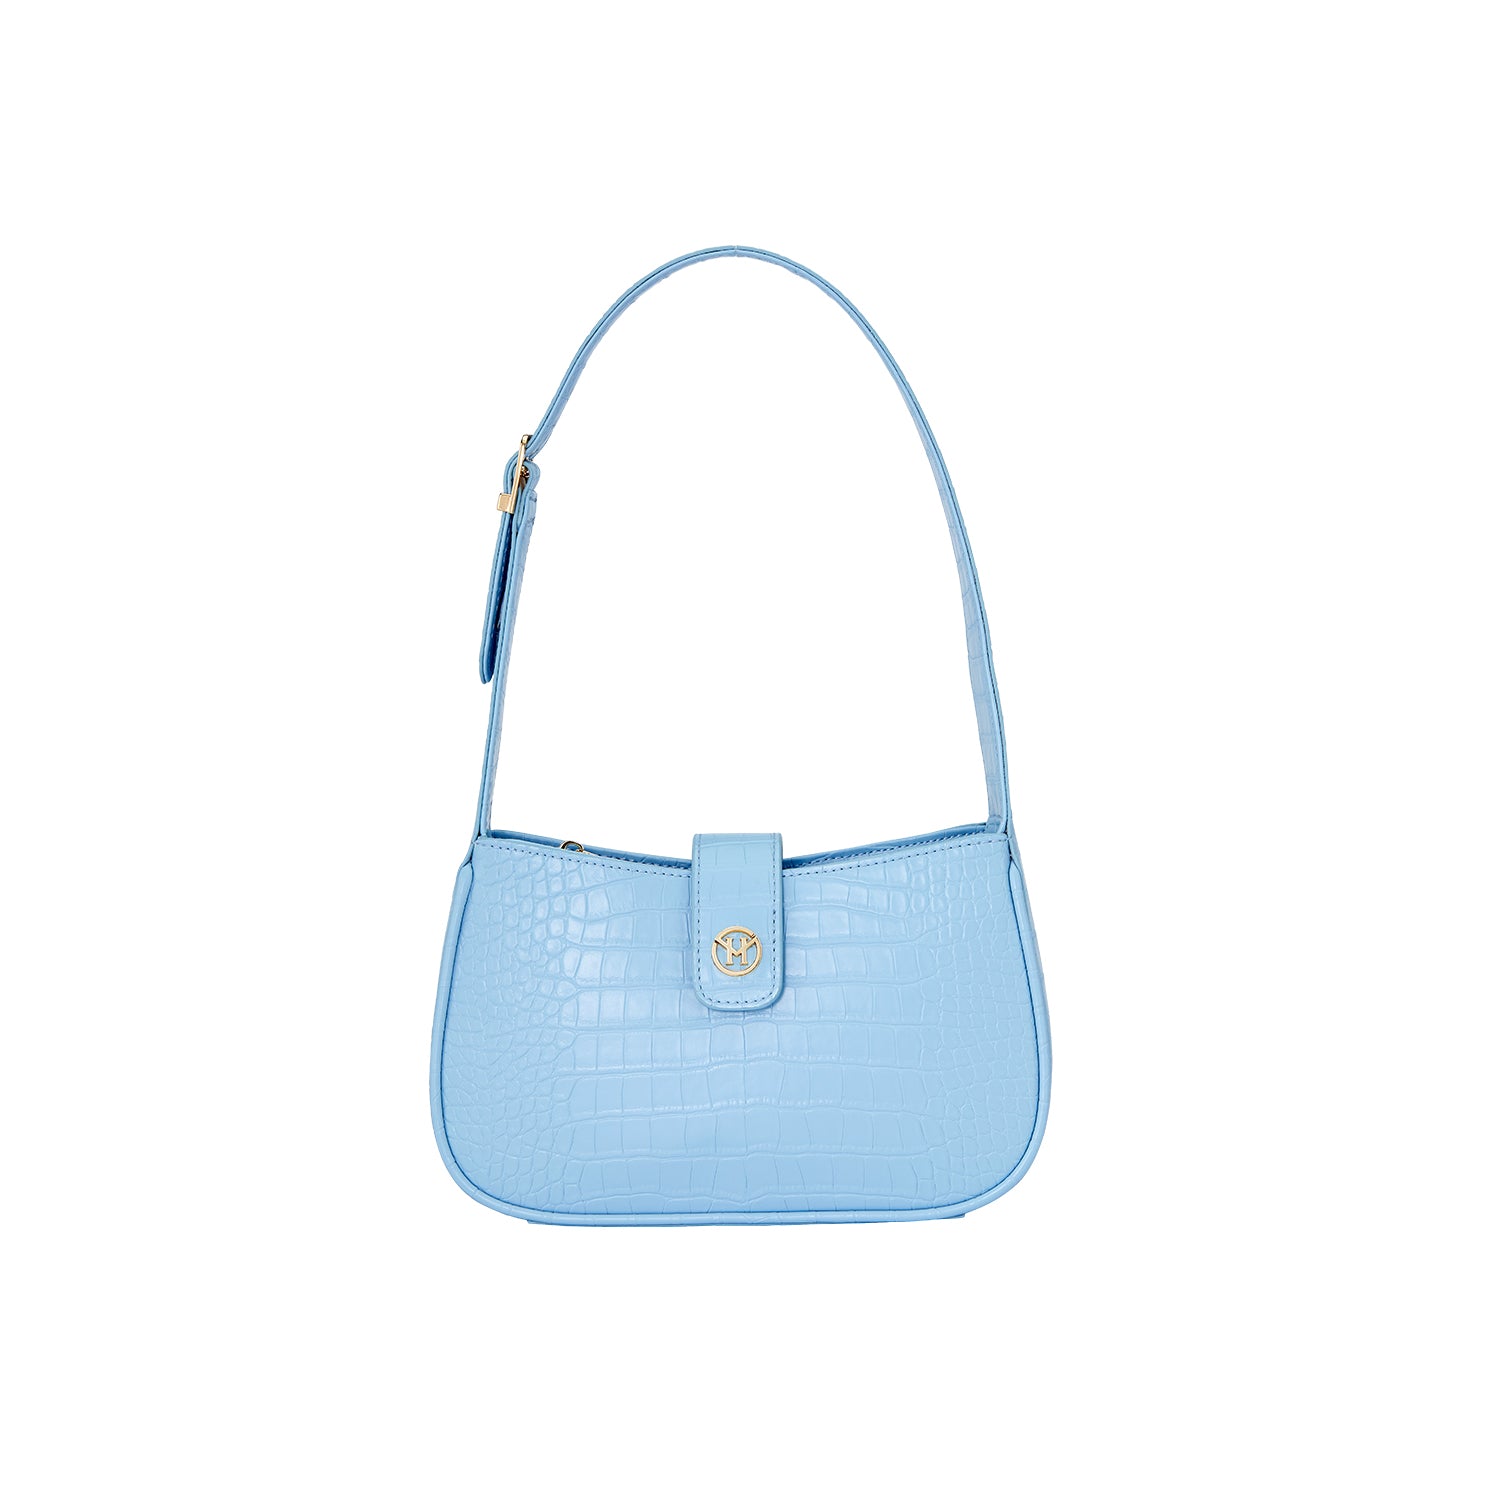 Handbag Tulip in Light Blue